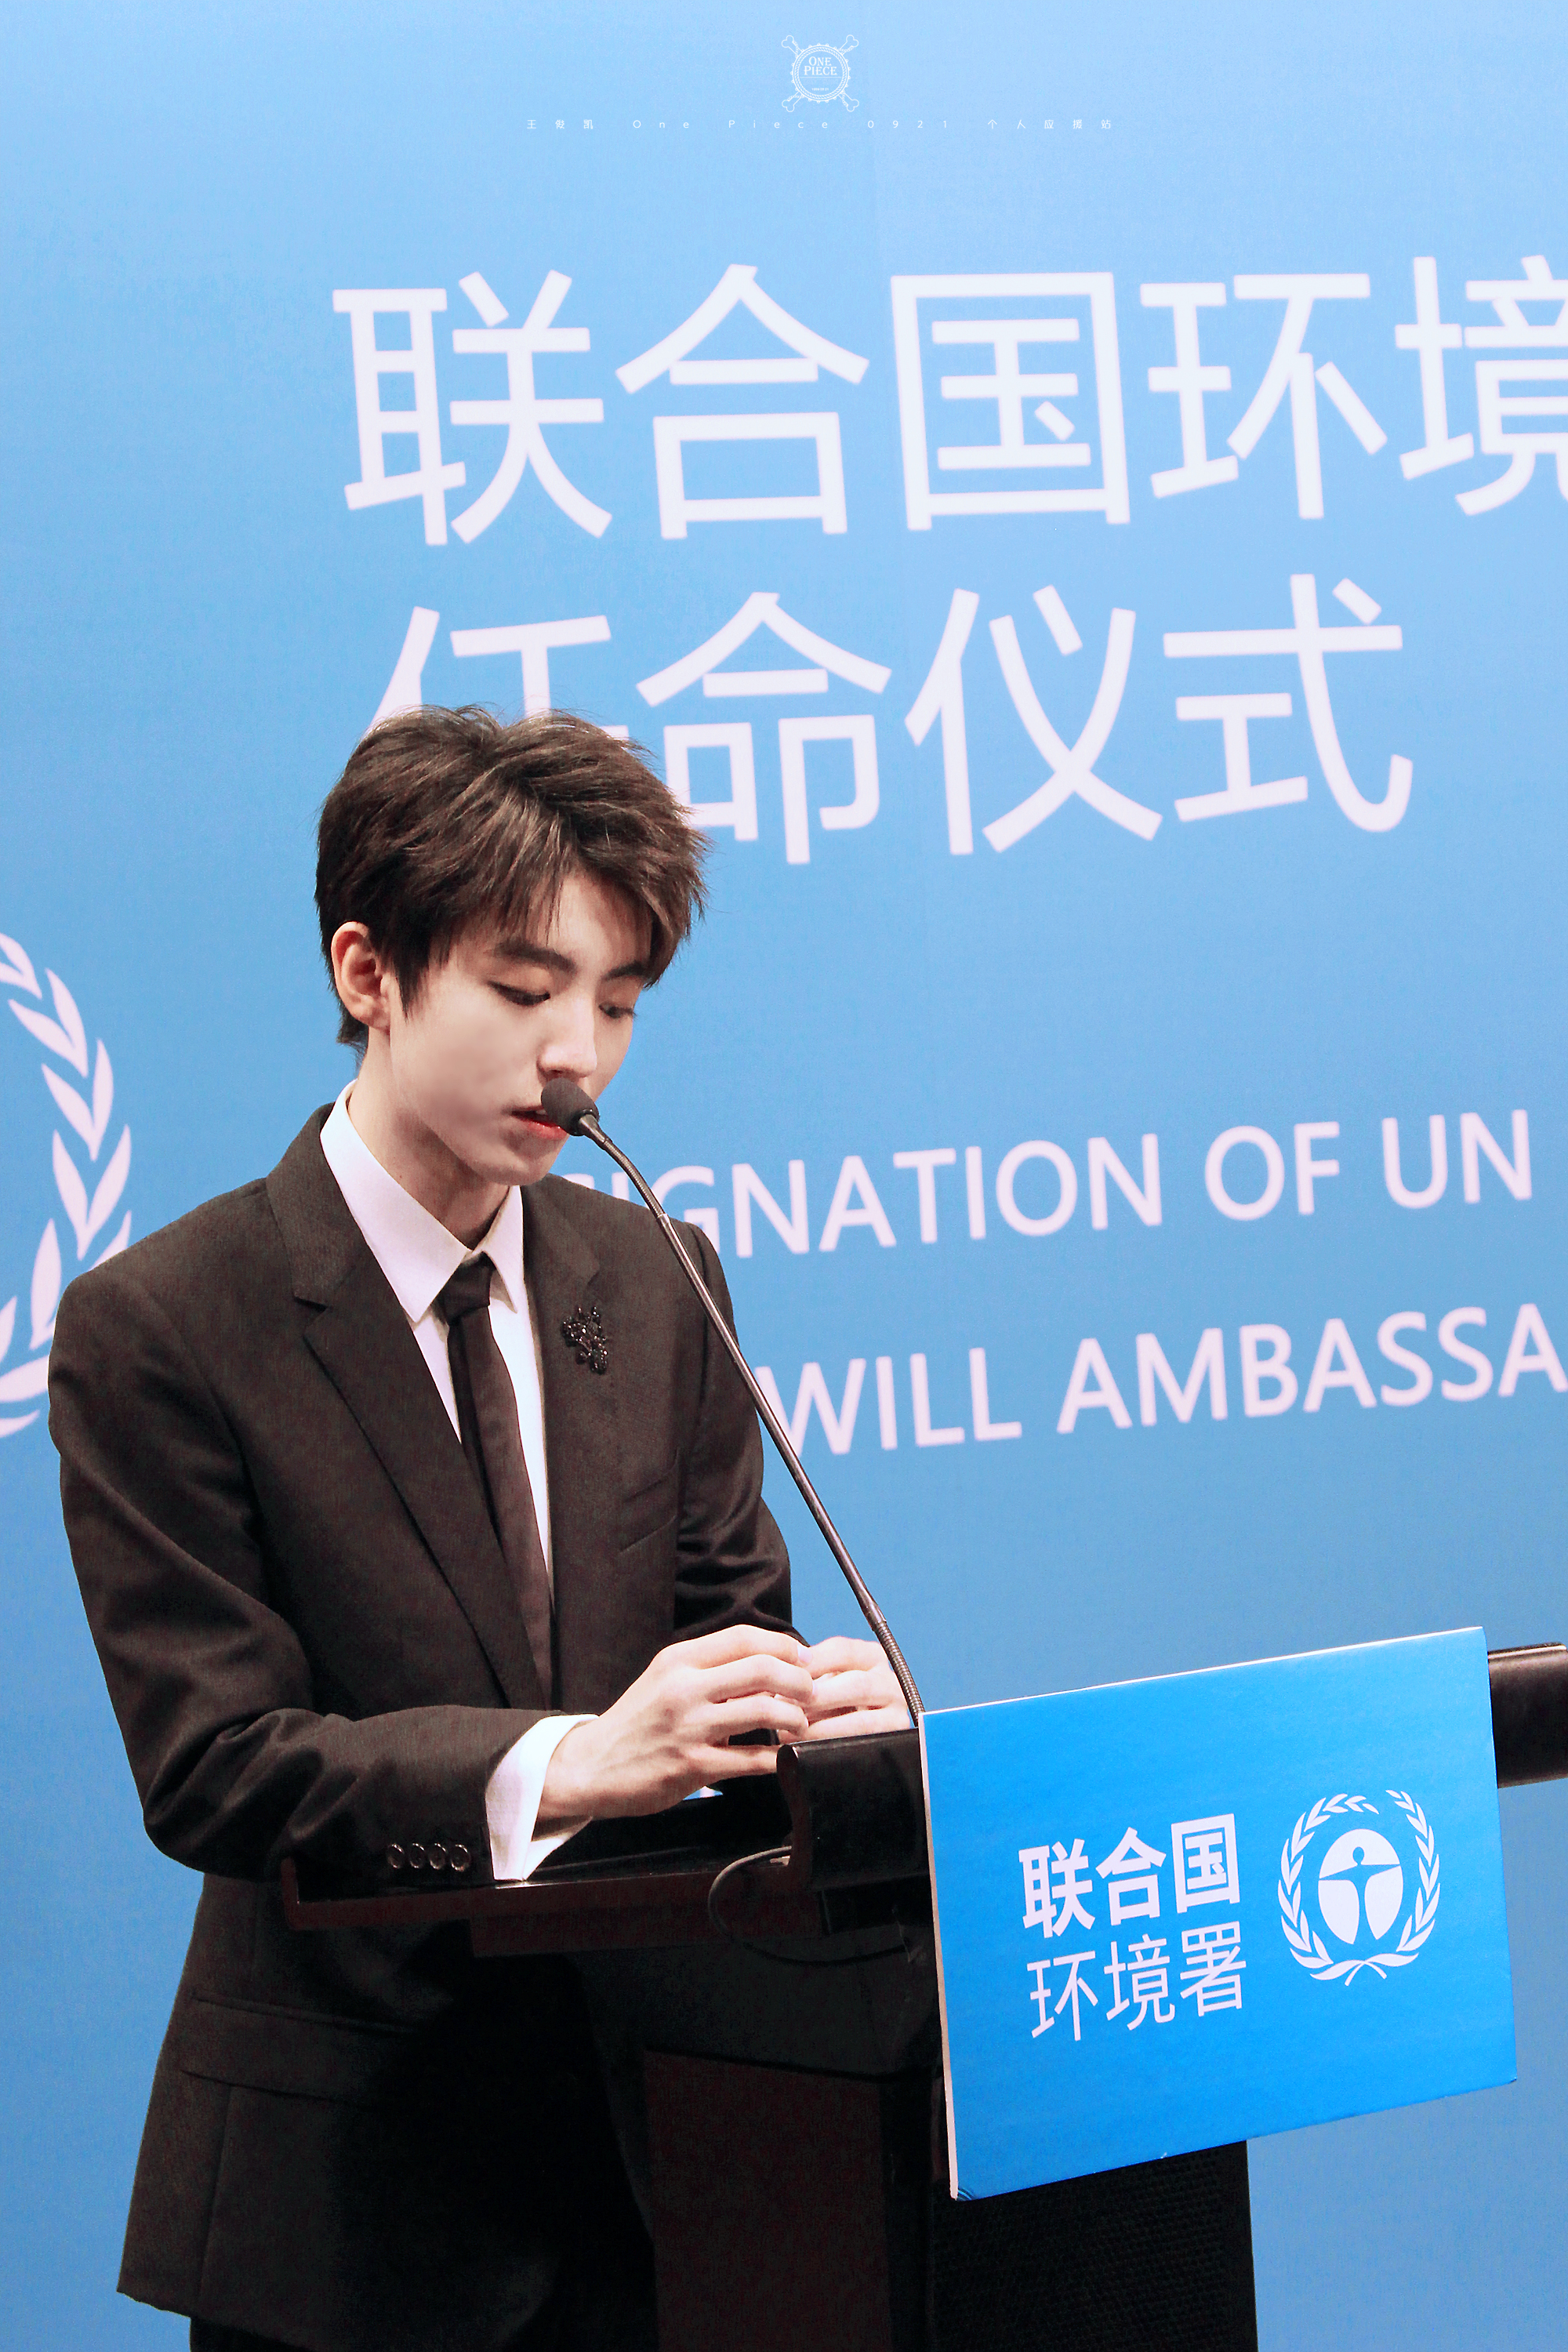 王俊凯×20180418联合国环境署亲善大使任命仪式×cr:logo